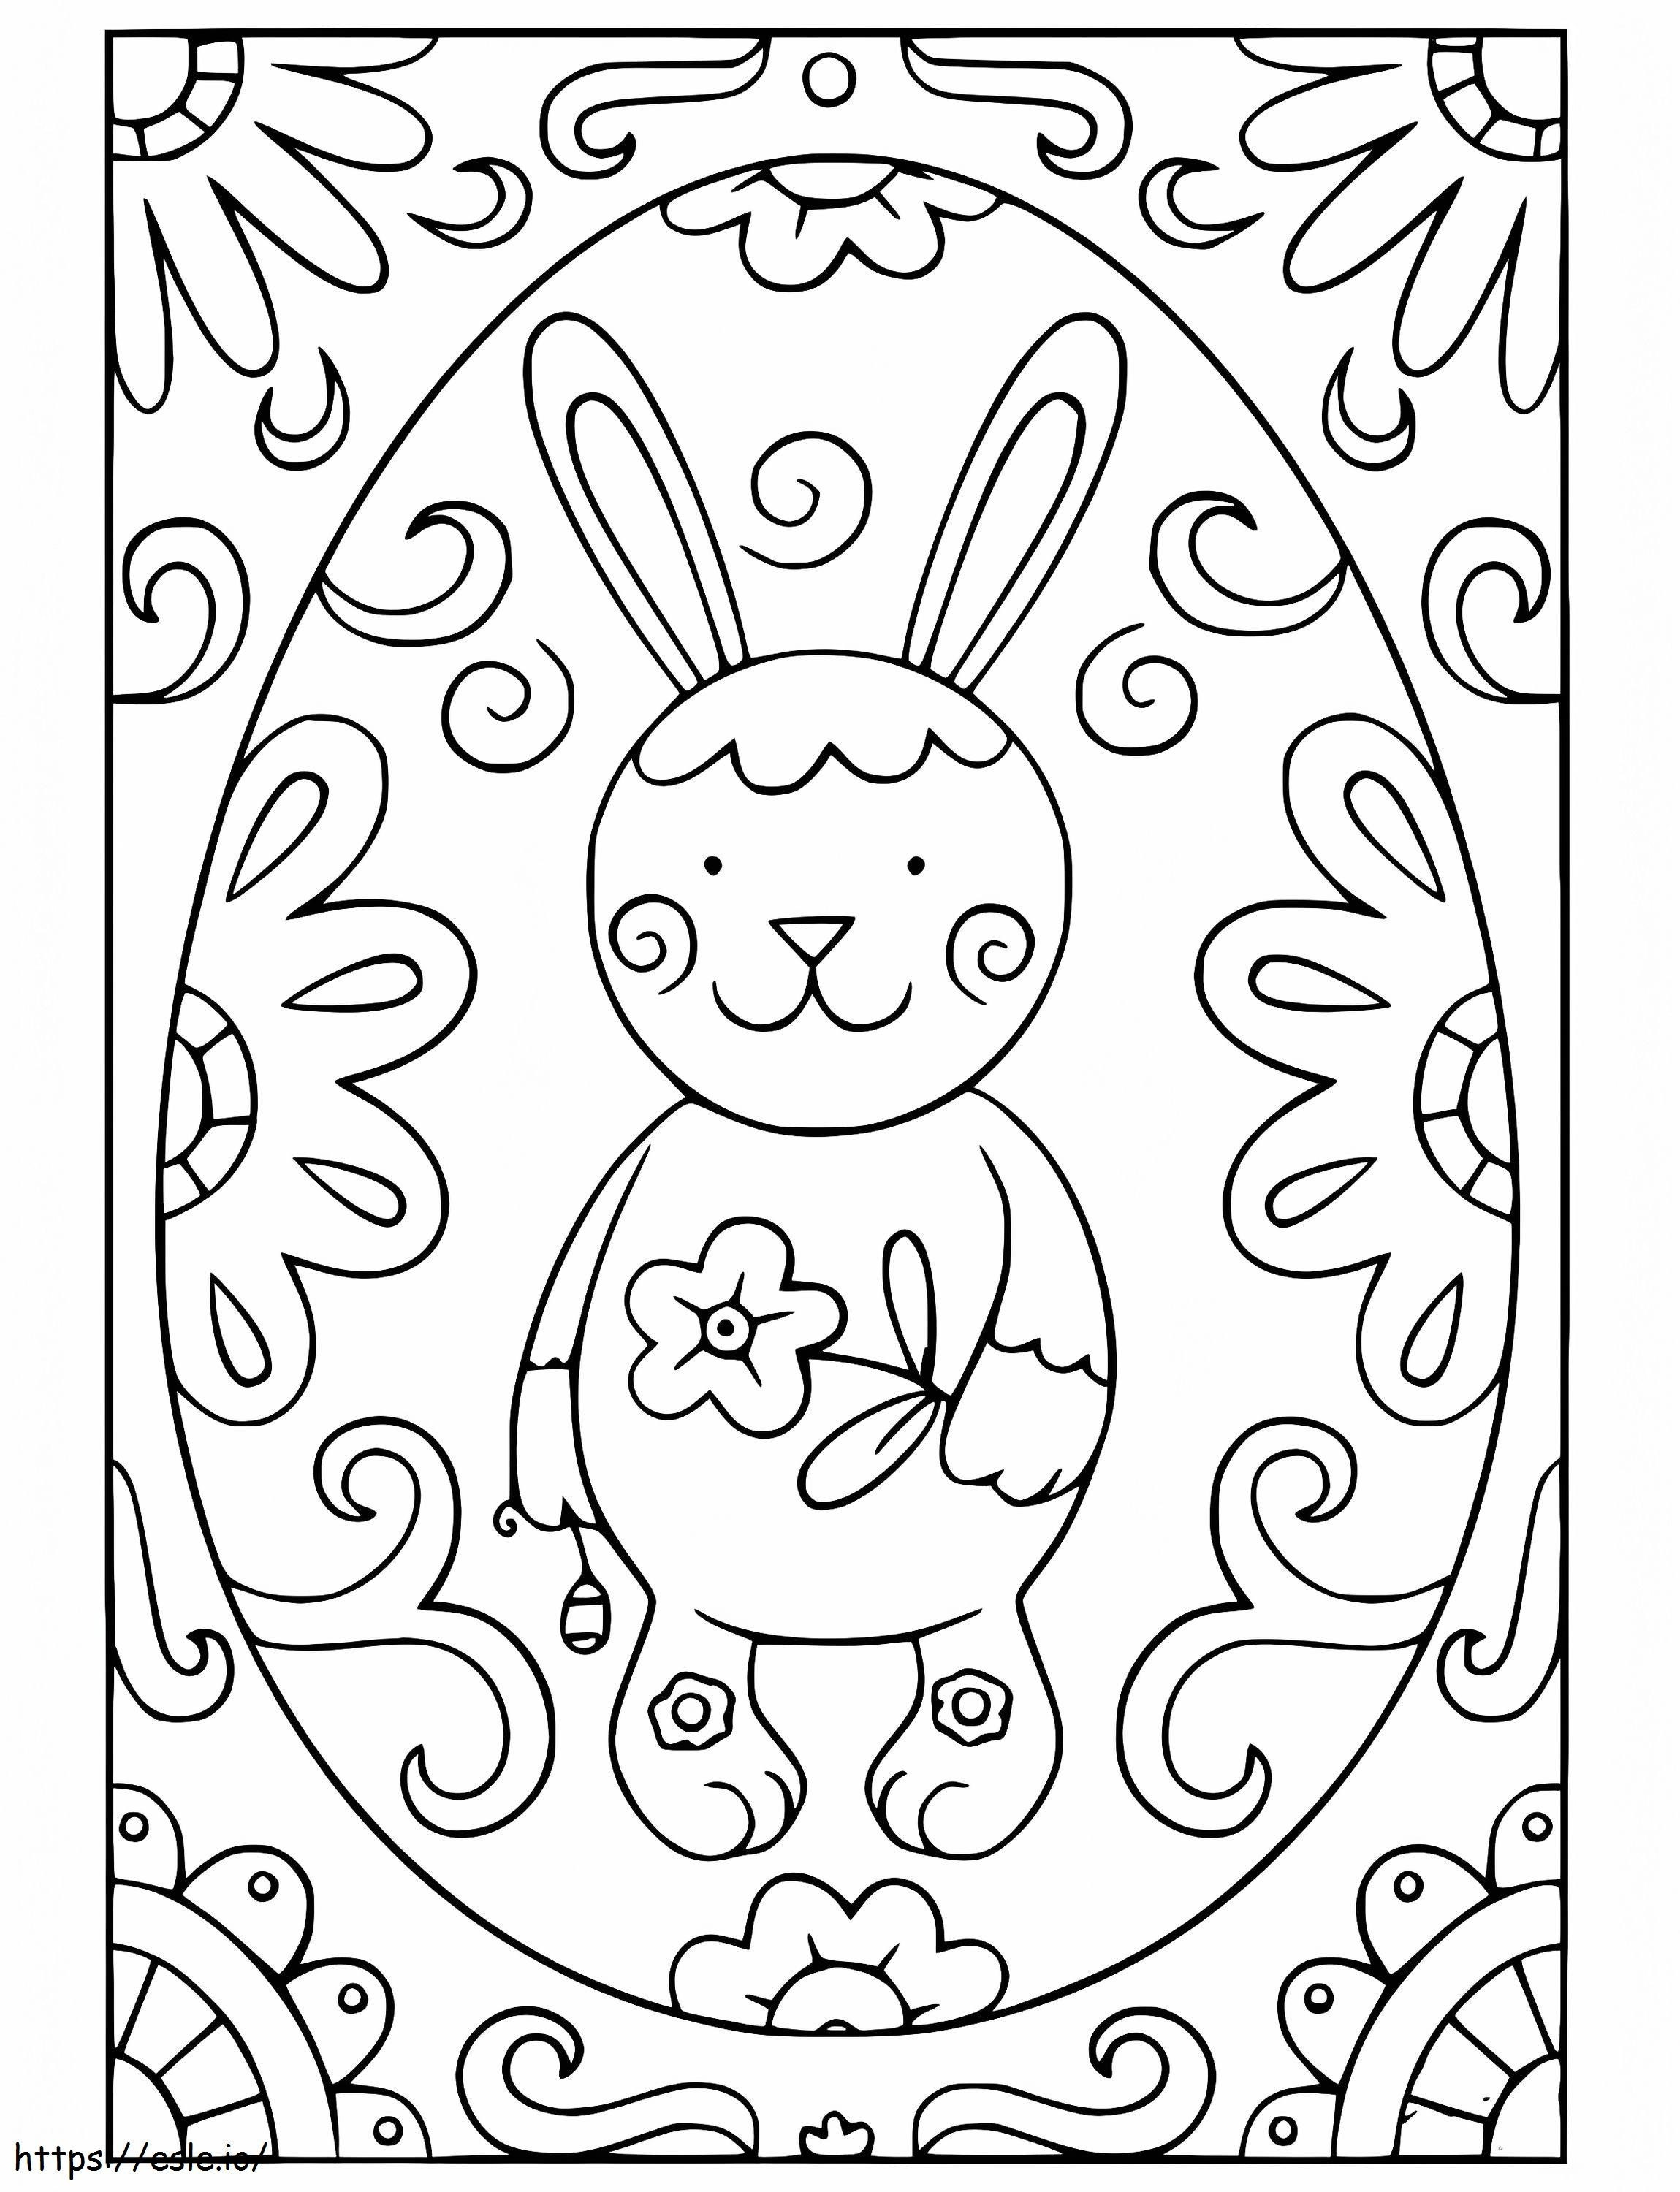 Cartão de coelhinho da Páscoa para colorir